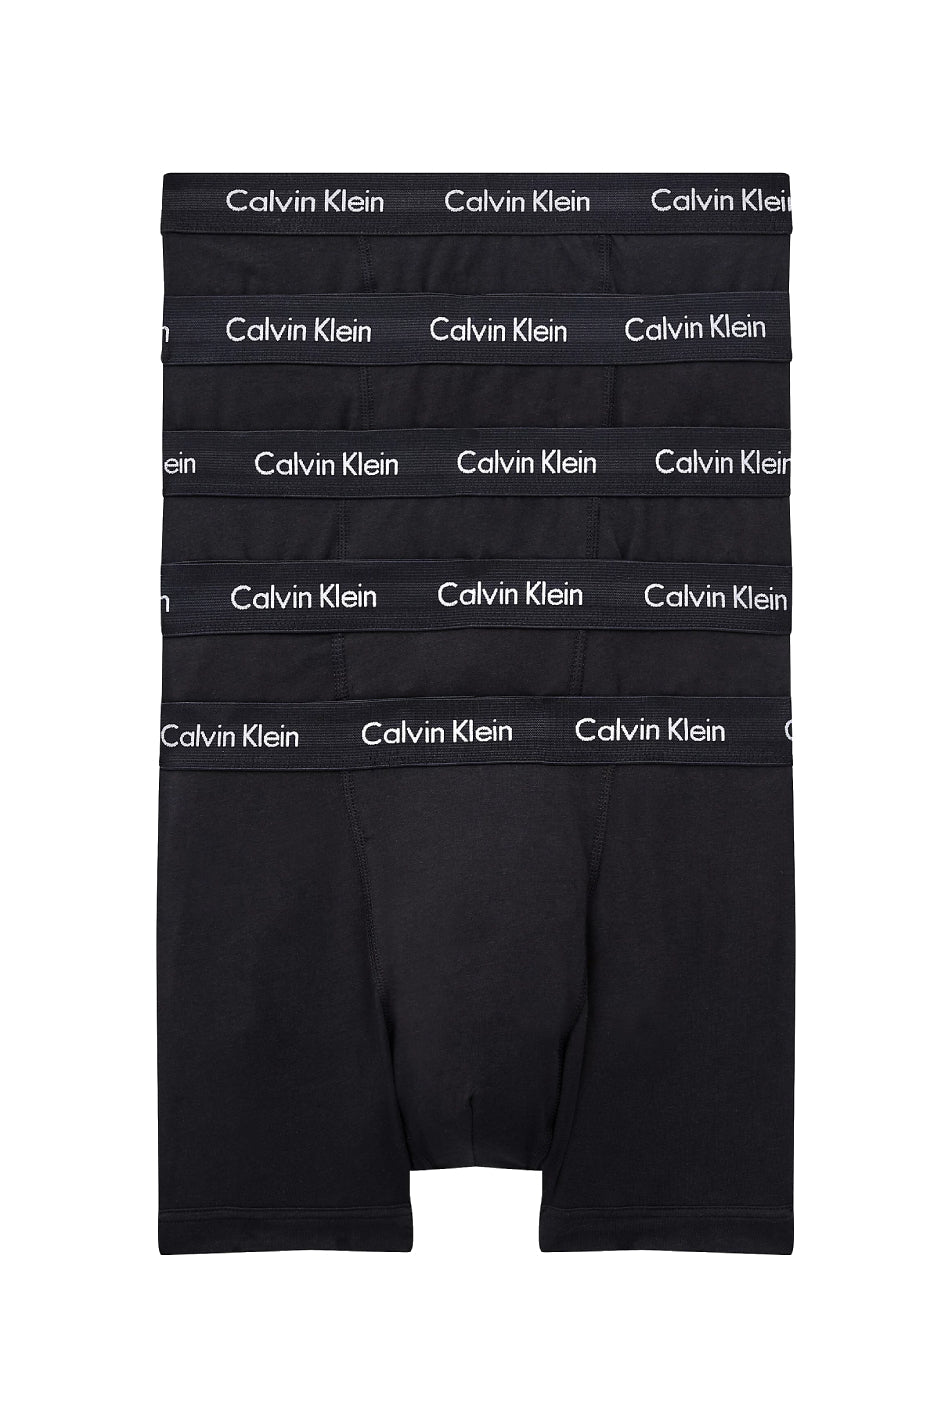 Calvin Klein 5 Pack Men's Cotton Stretch Trunk